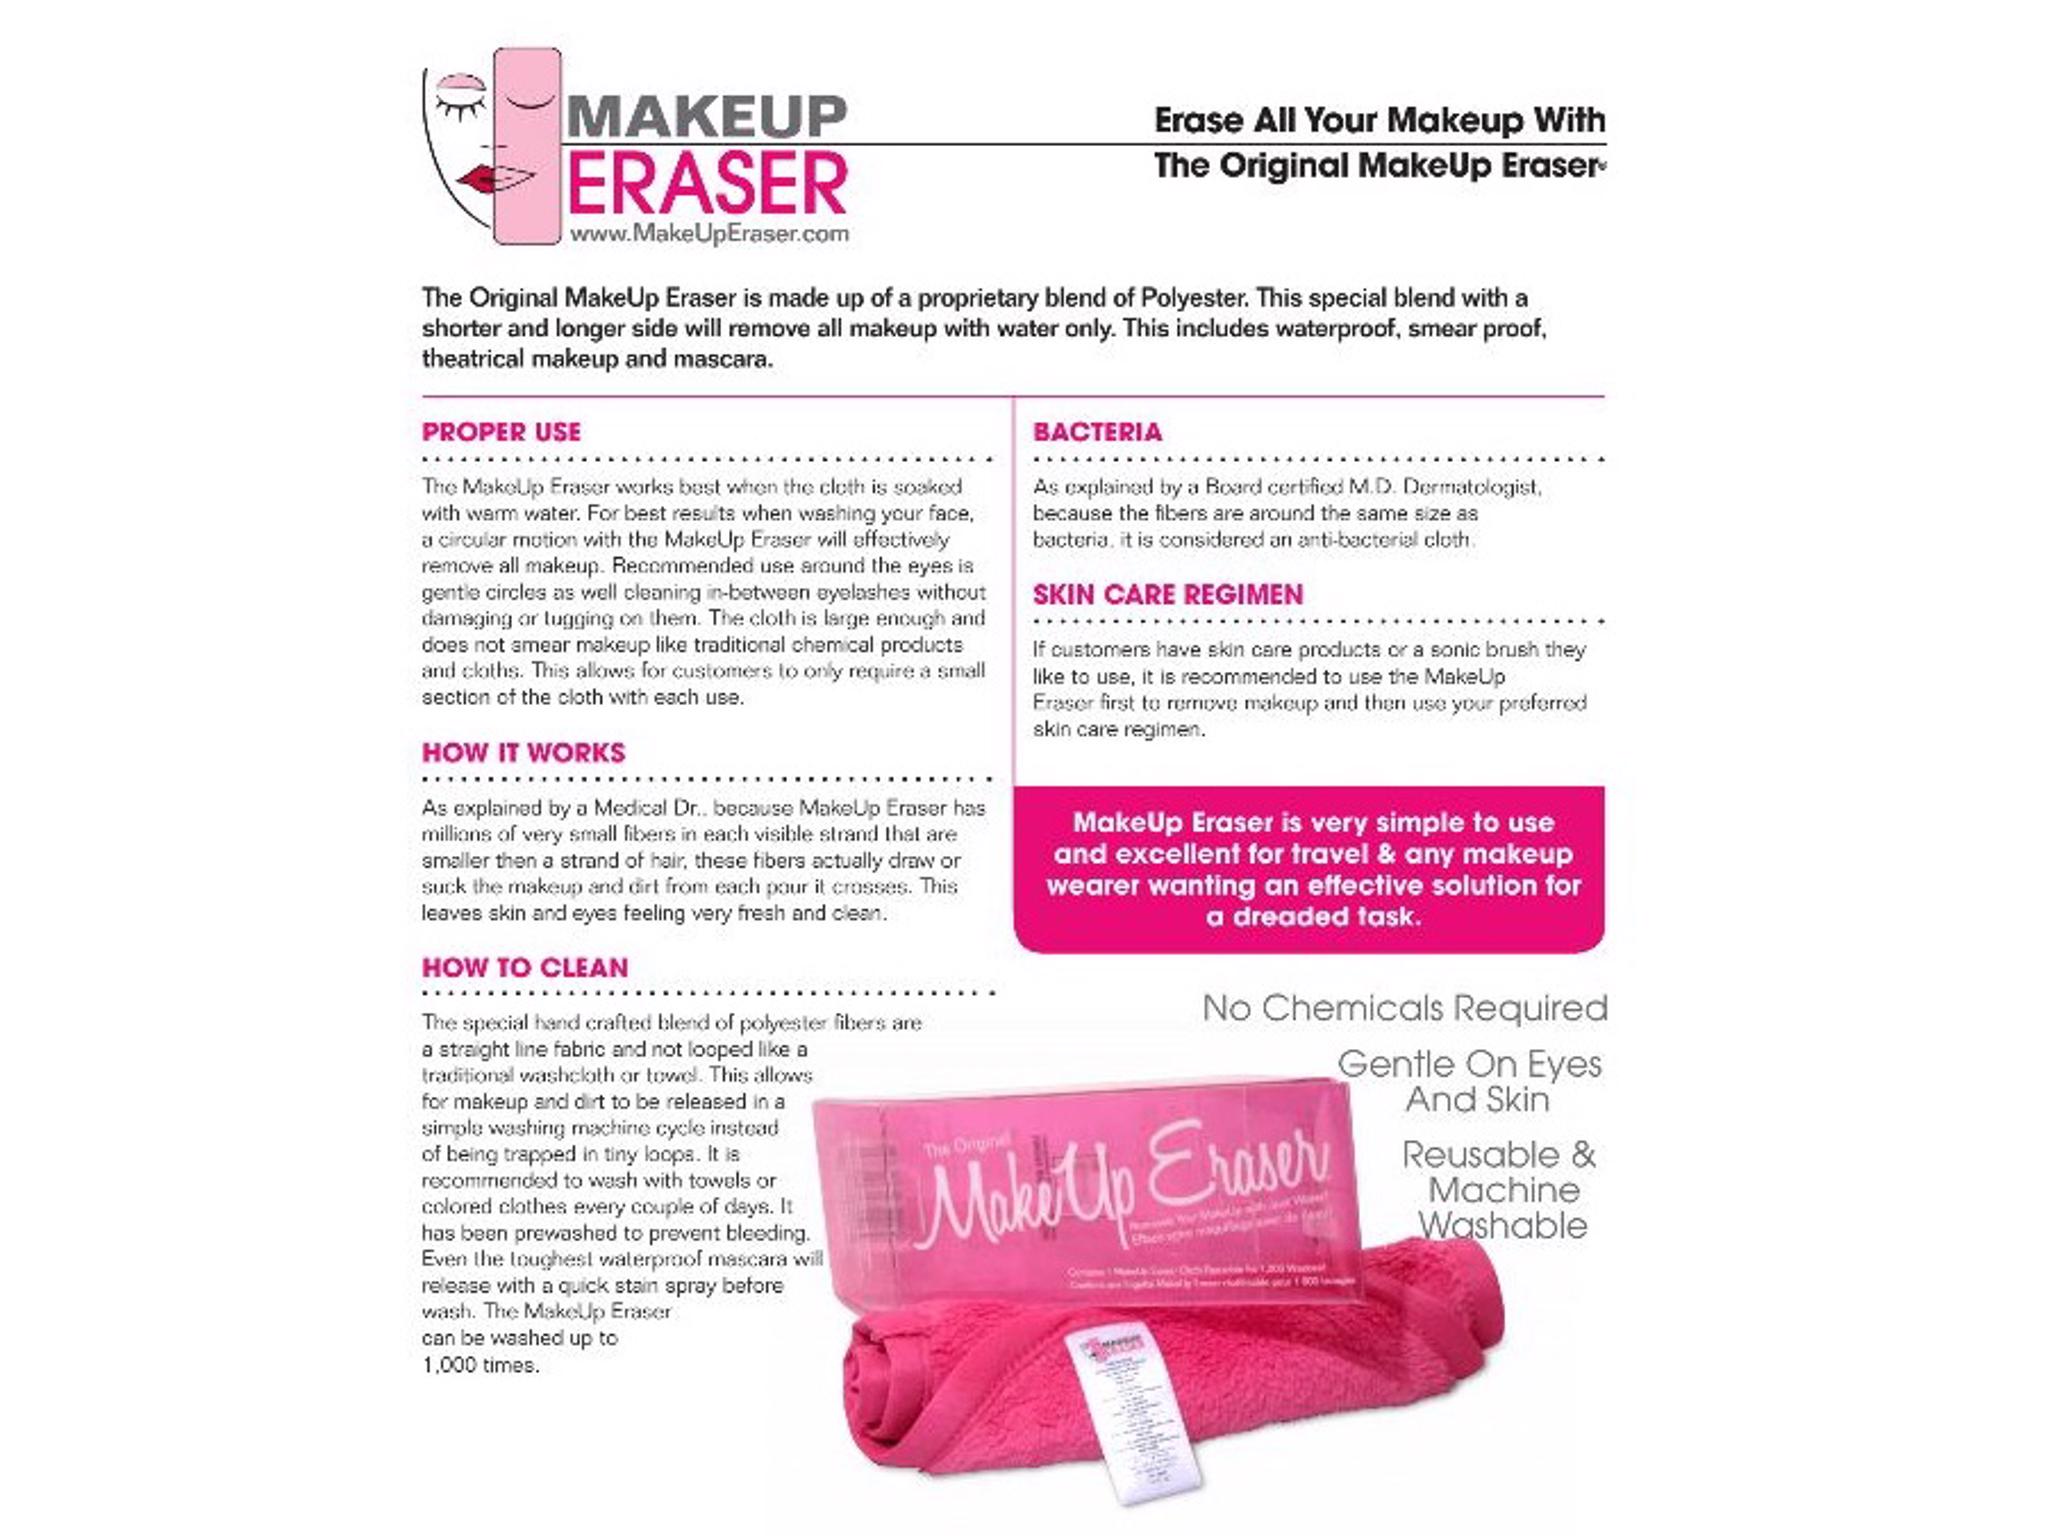 Makeup Eraser - The Original Makeup Eraser 2451